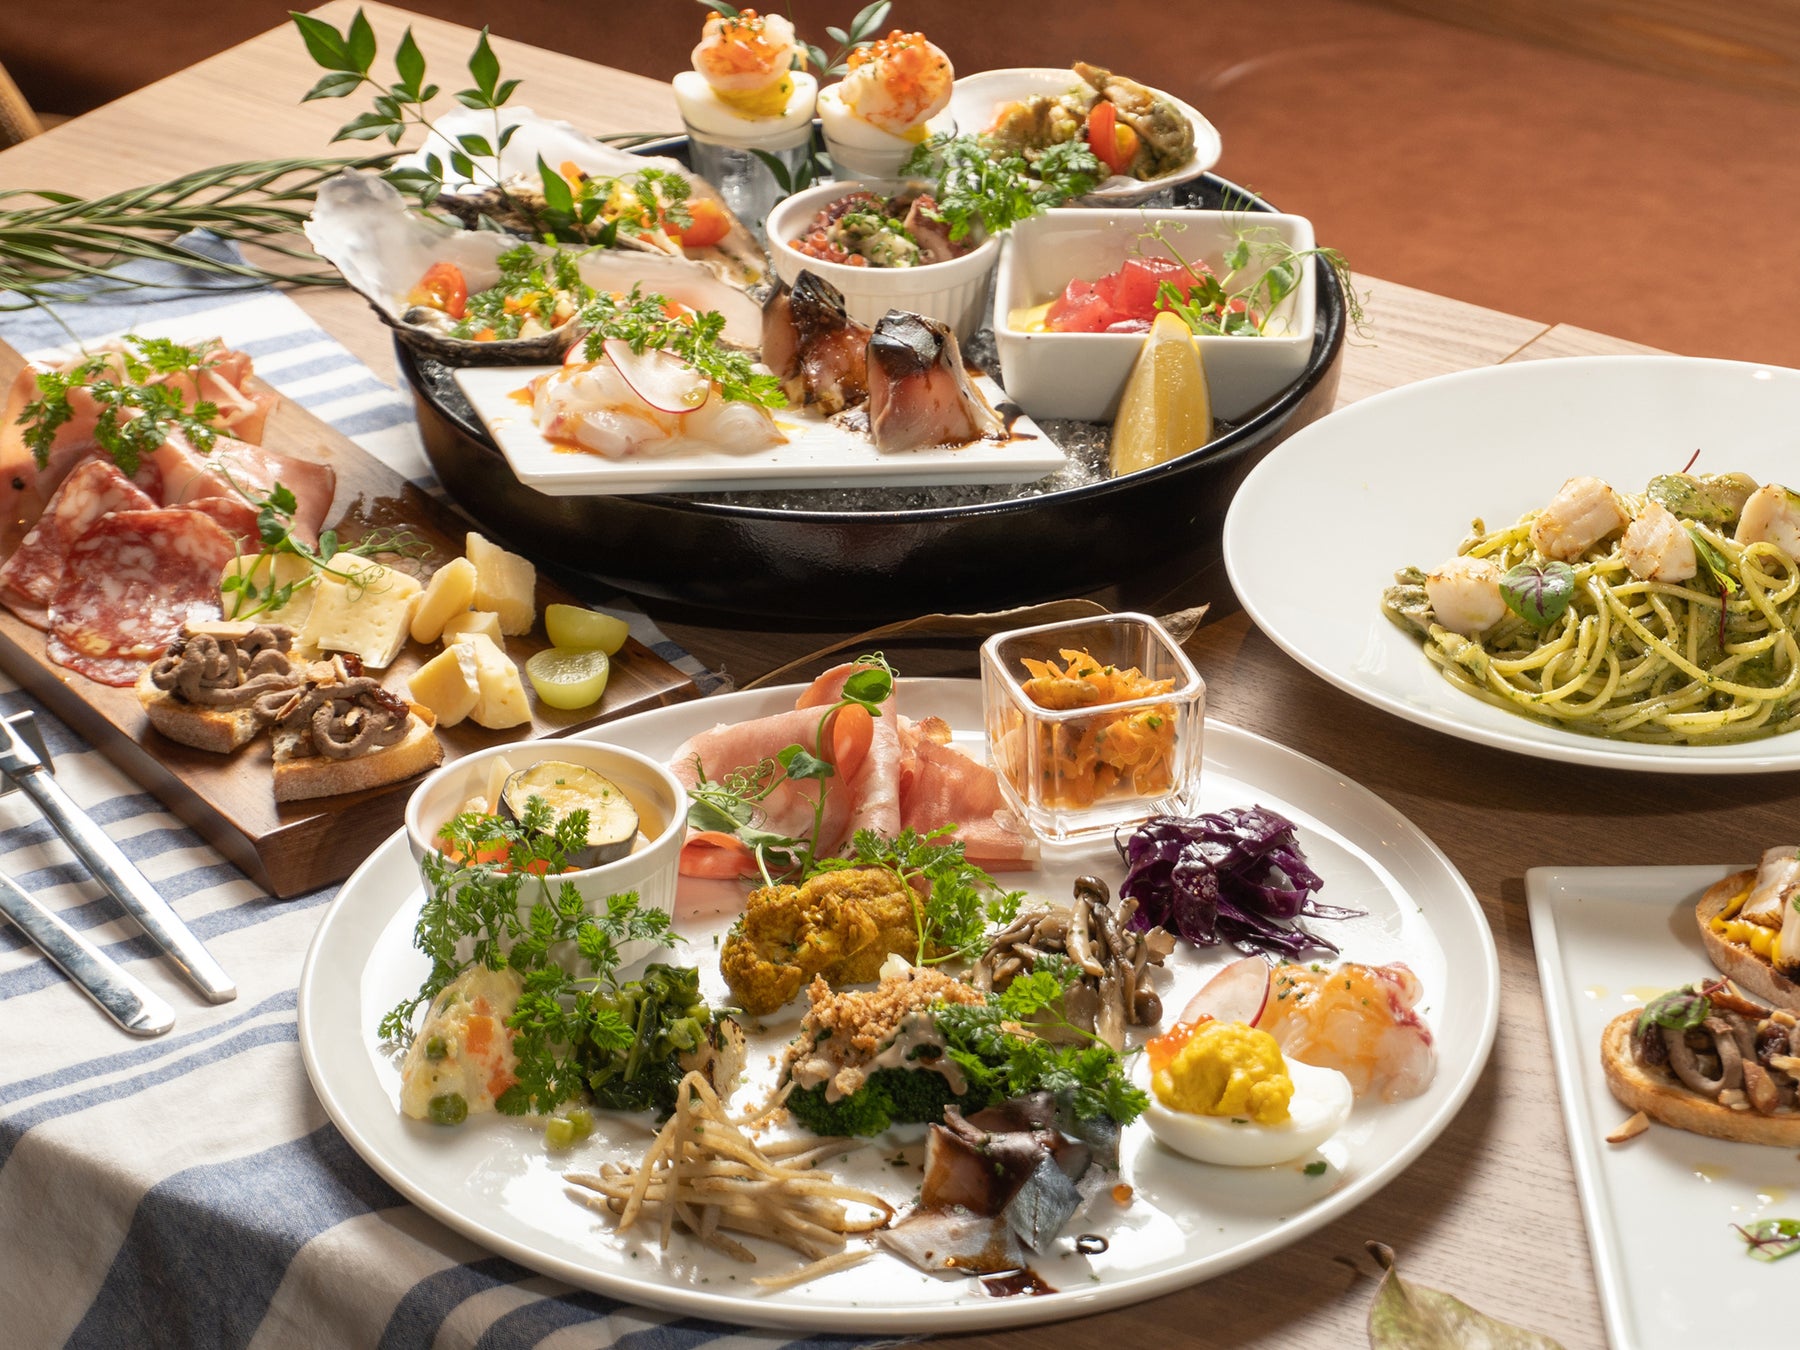 【2月6日OPEN!!】神戸元町に魚介メインのイタリアン・スペイン料理店「フィッシュアイランド」がオープン!